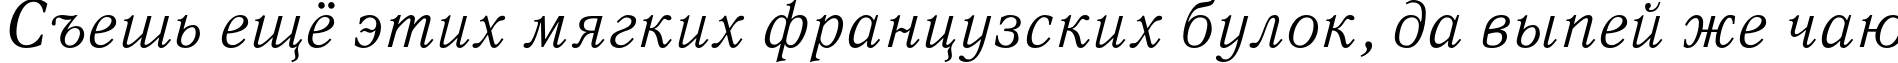 Пример написания шрифтом QuantAntiquaC Italic текста на русском